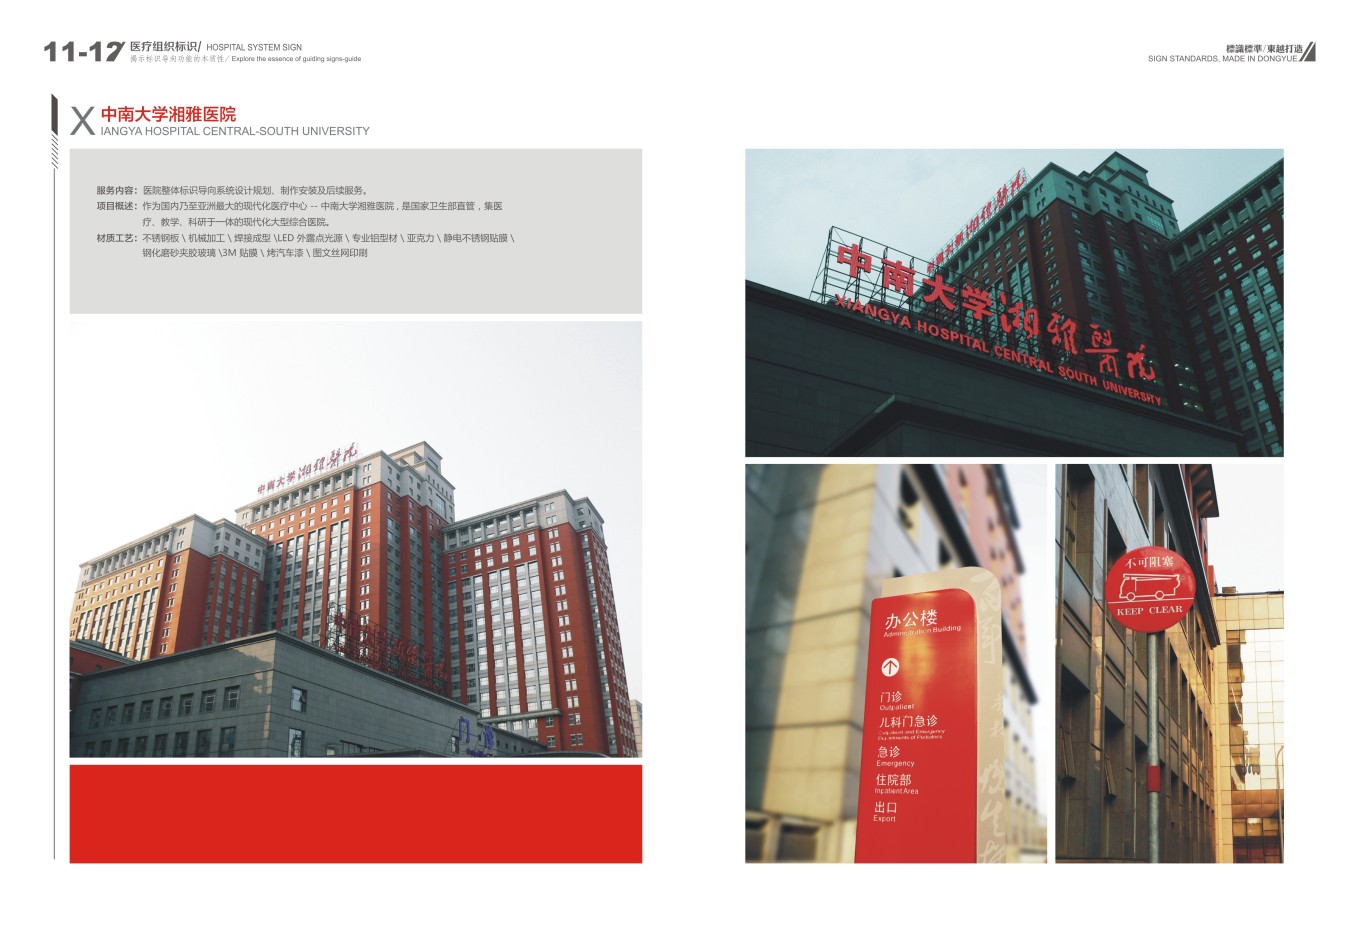 中南大学湘雅医院整体标识导向系统设计规划、制作安装及后续服务图1